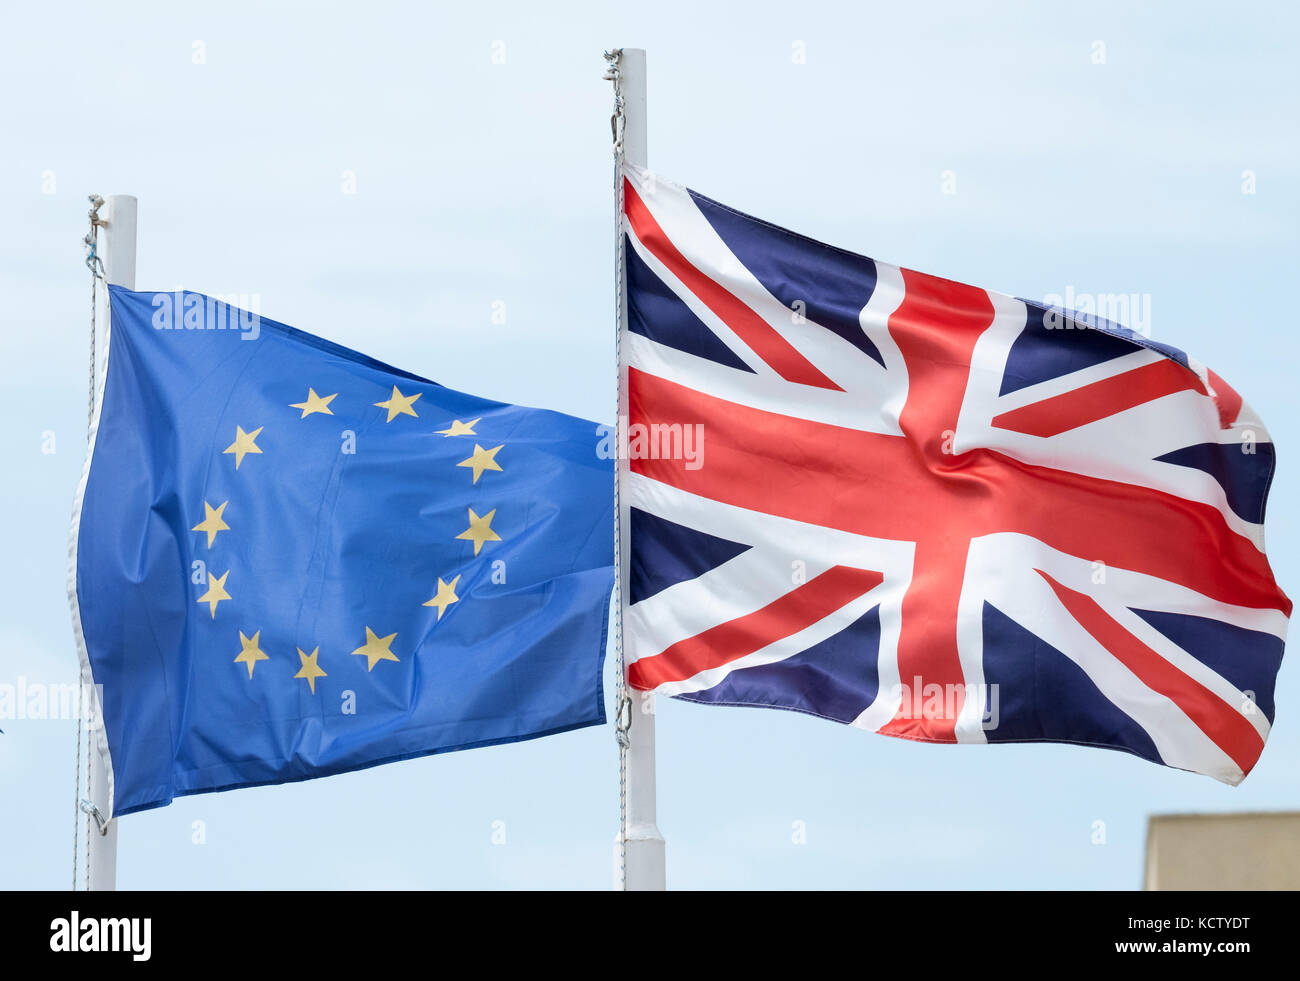 La Unión europea y británica (Union Jack) banderas de lado a lado en Chipre. Foto de stock